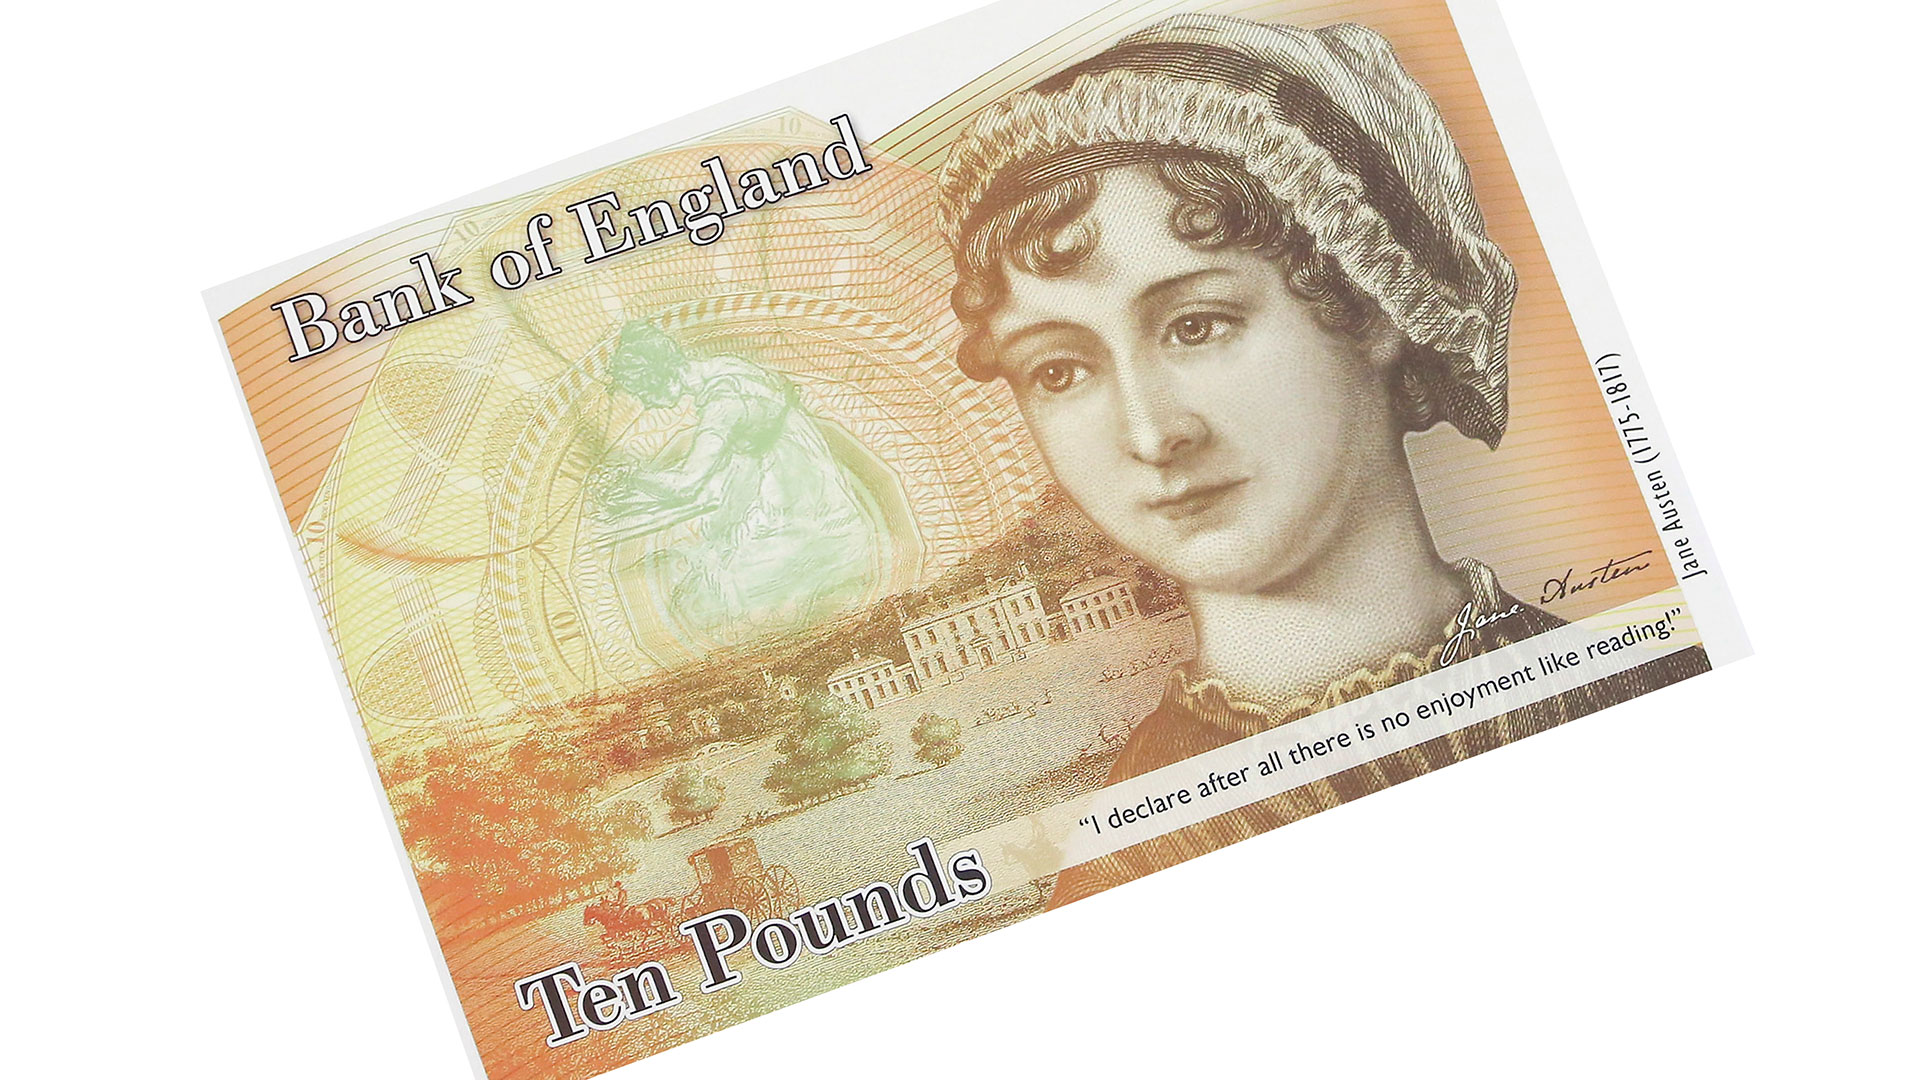 Jane Austen ten pound note